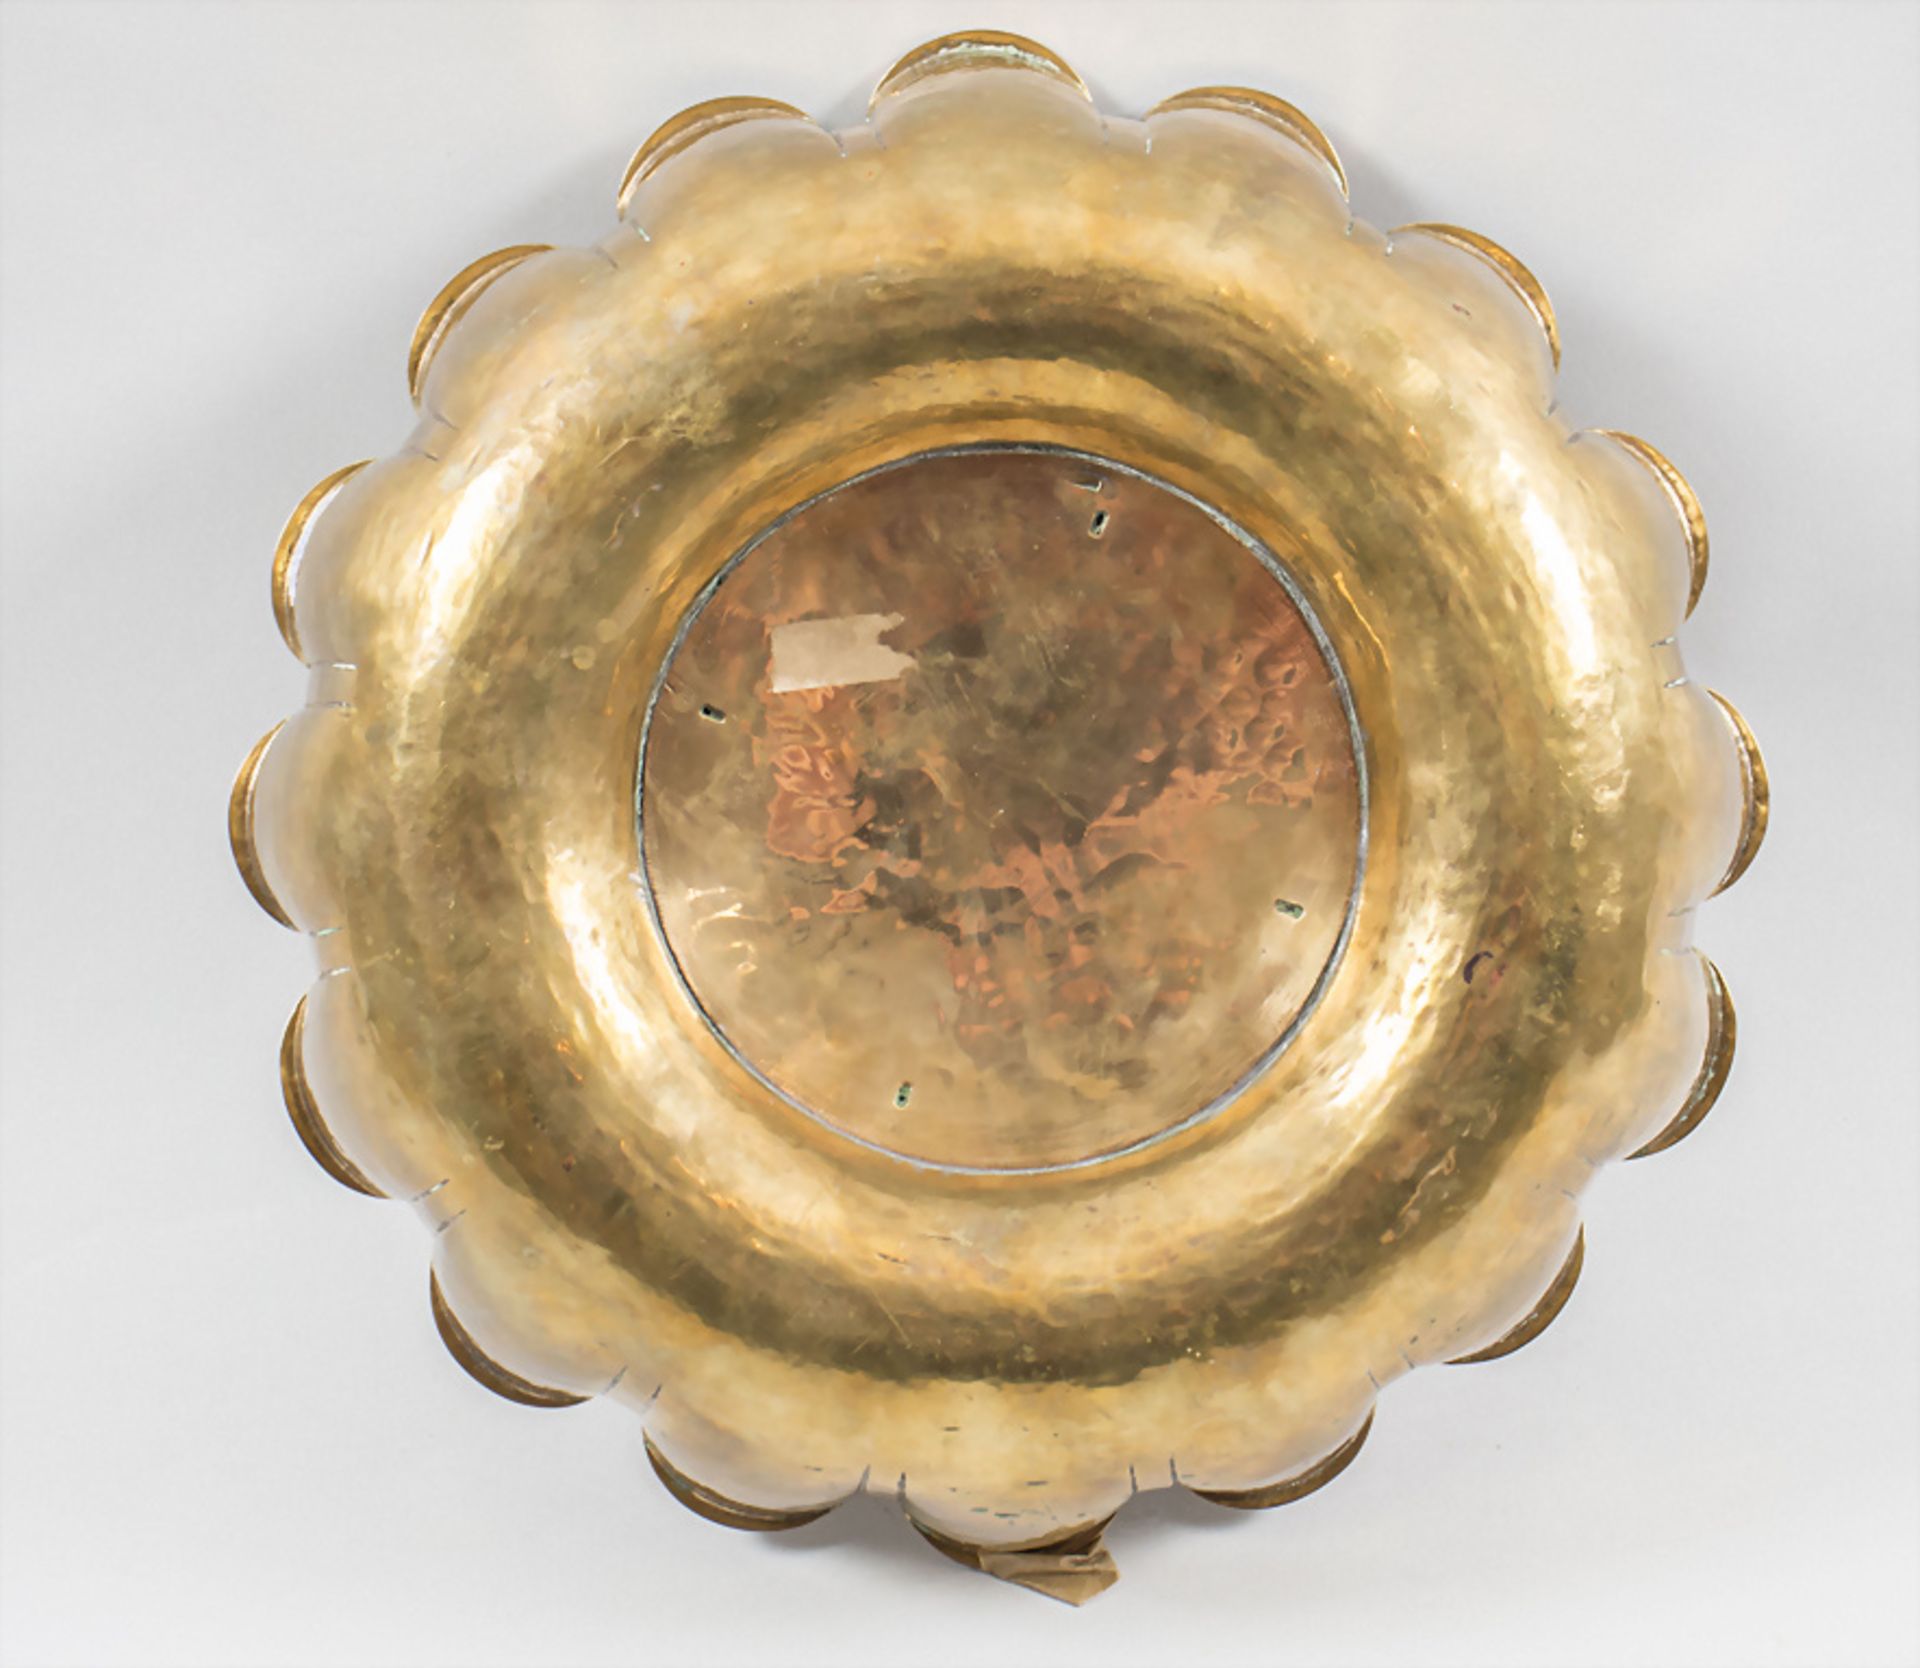 Zierschale / A decorative brass bowl, F. Jacques, Brüssel, um 1955 - Image 2 of 6